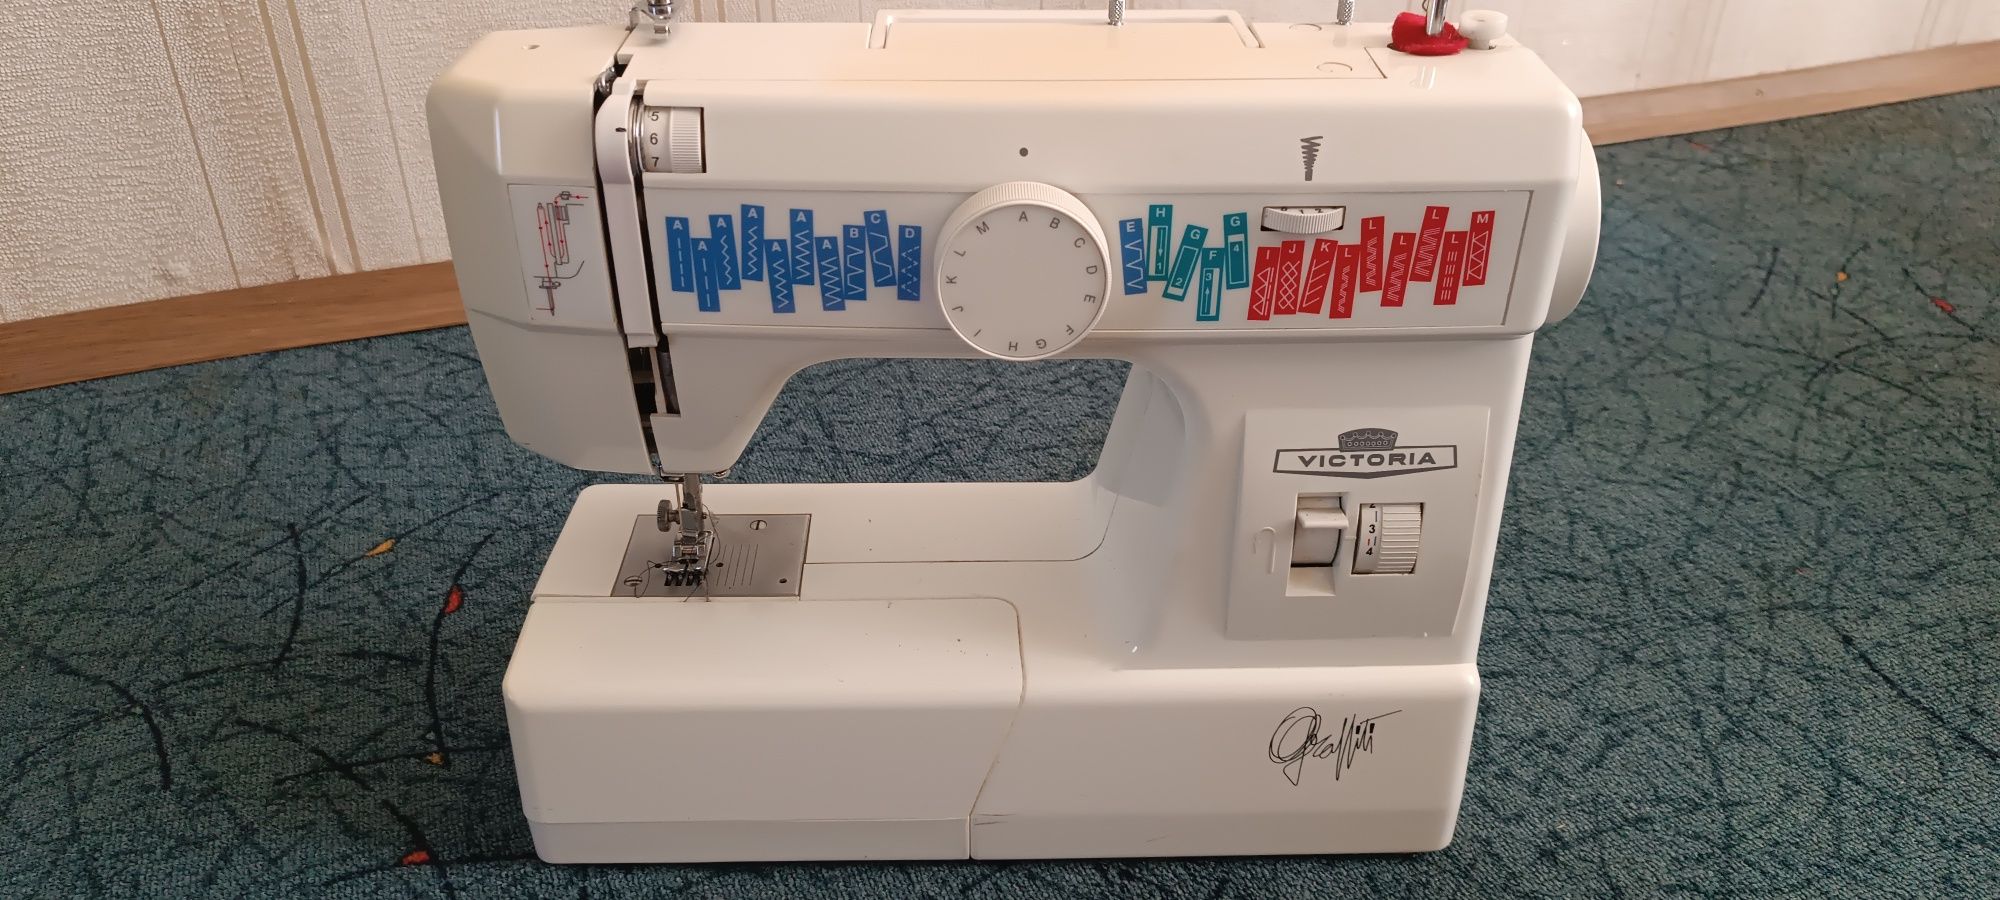 Швейная машинка Victoria 7910